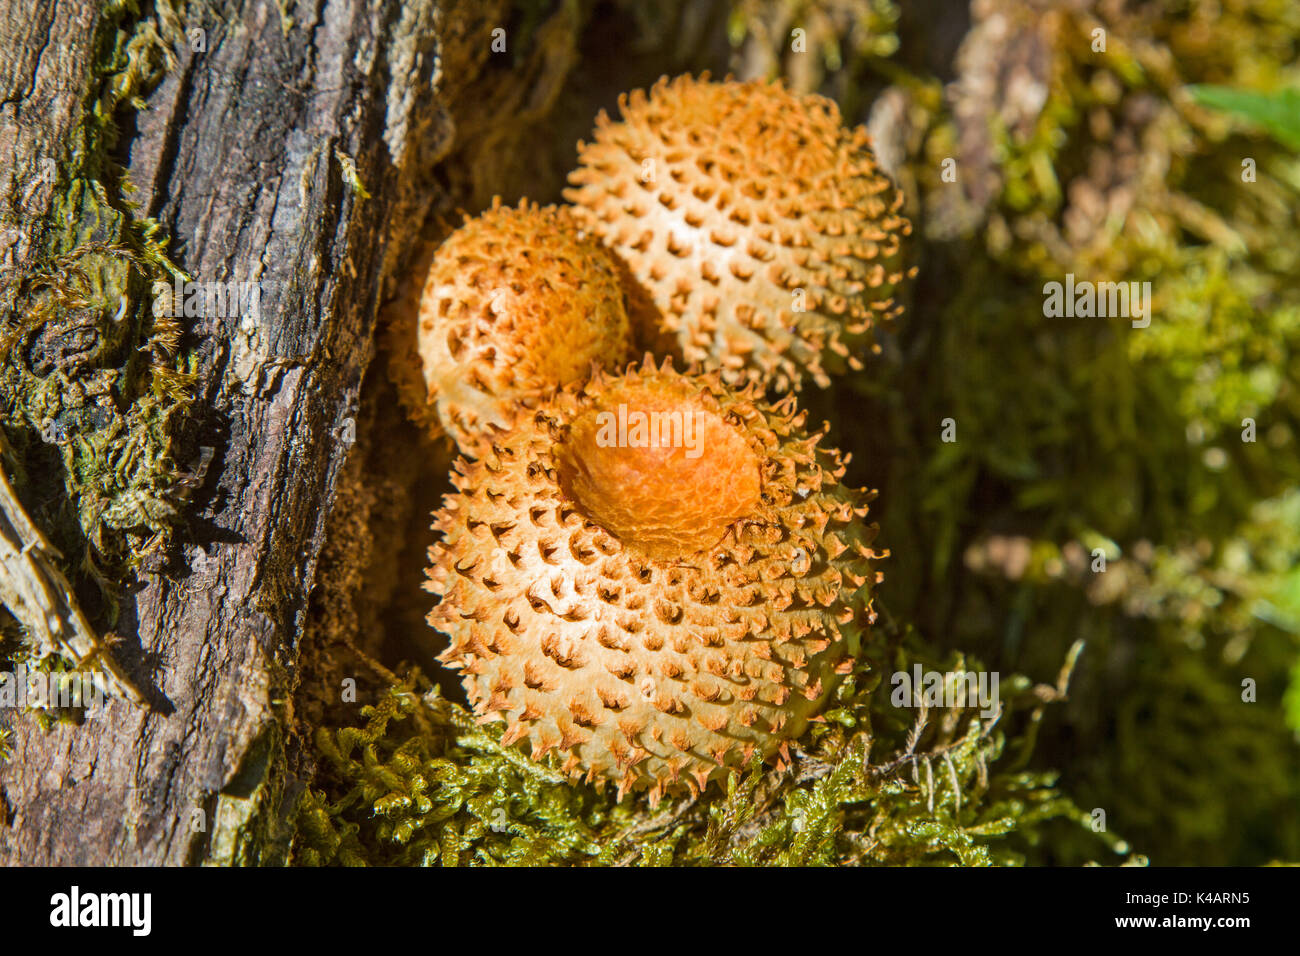 Eine Dekorative Pilzart Die Sich Mit Vorliebe Auf Altem Vermoderten Holz Ansiedelt Stock Photo